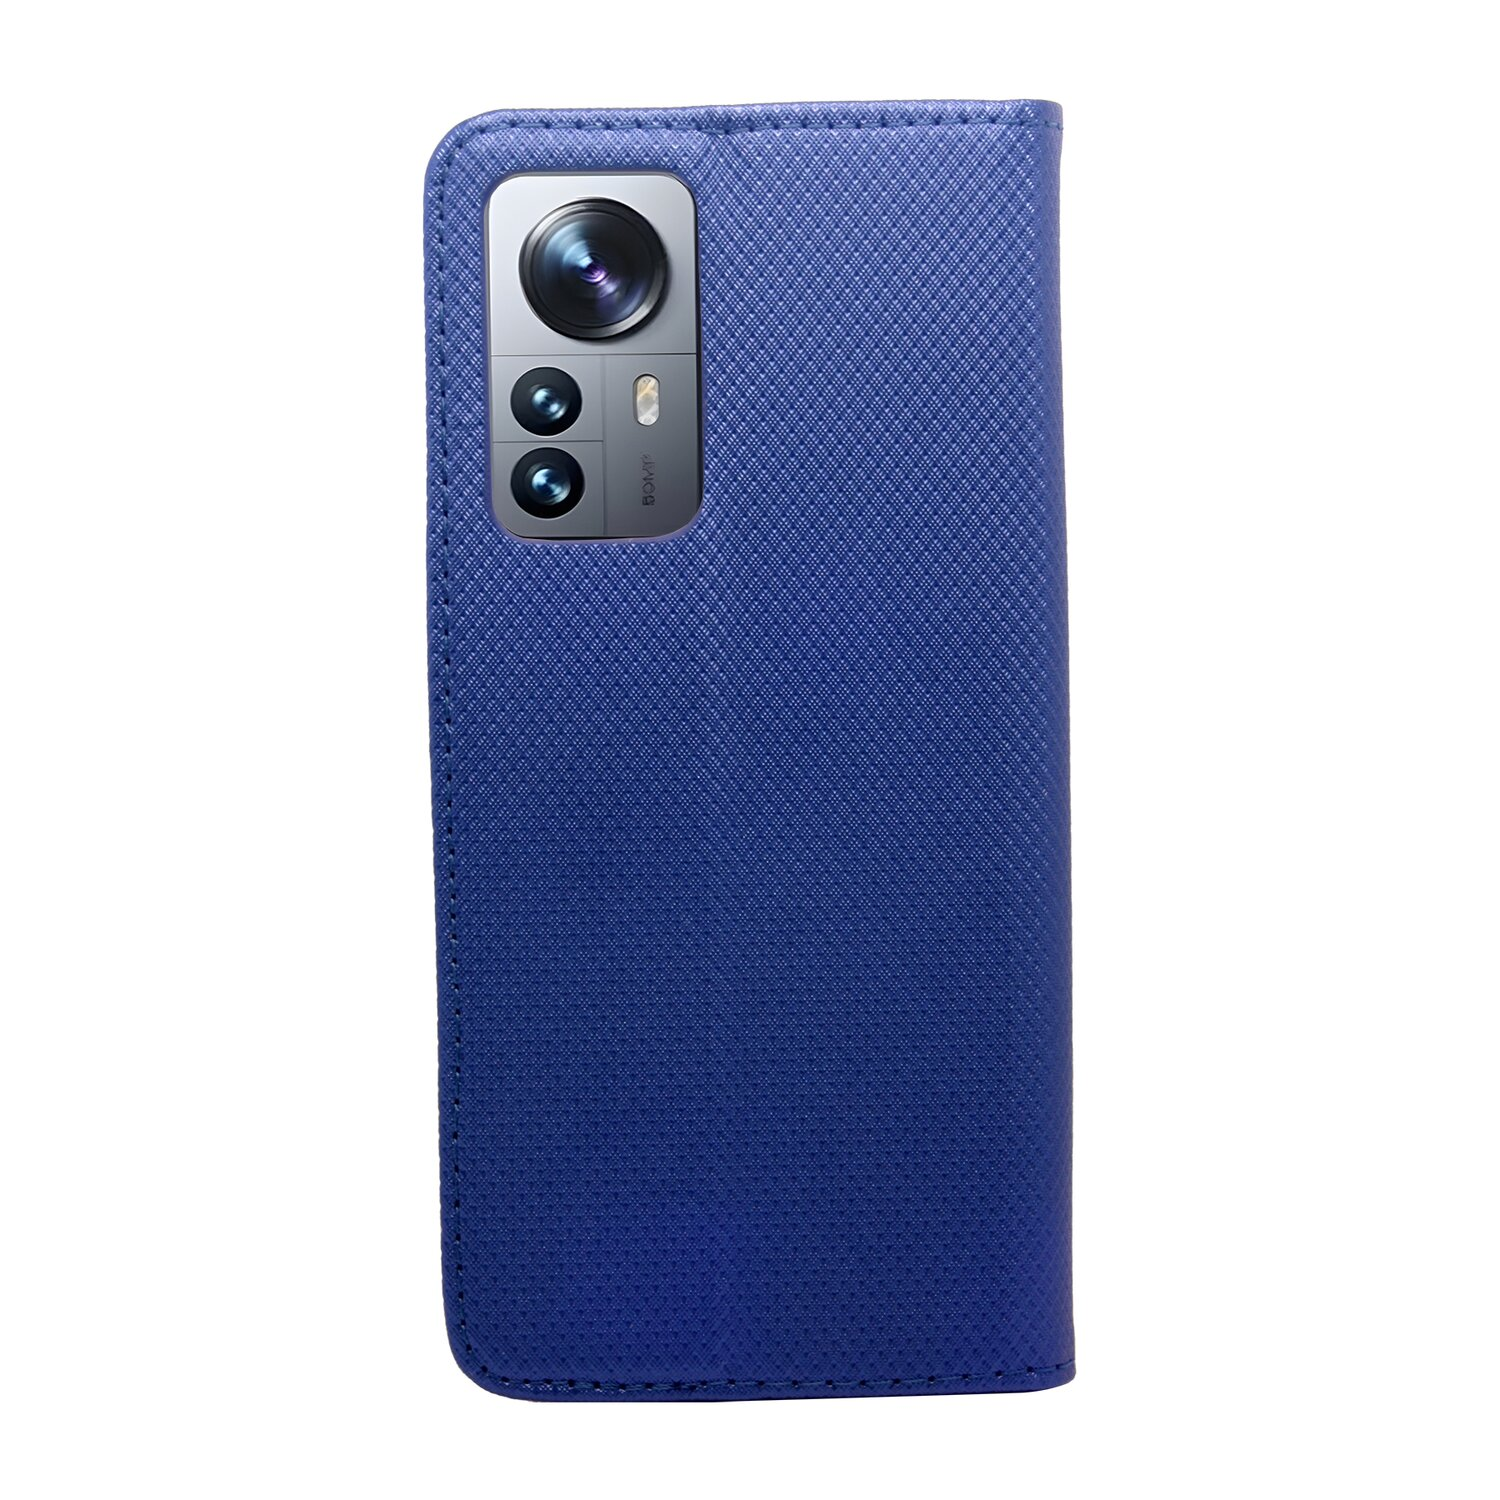 Tasch, Blau 12 5G, PRO COFI Xiaomi, Bookcover, Buch